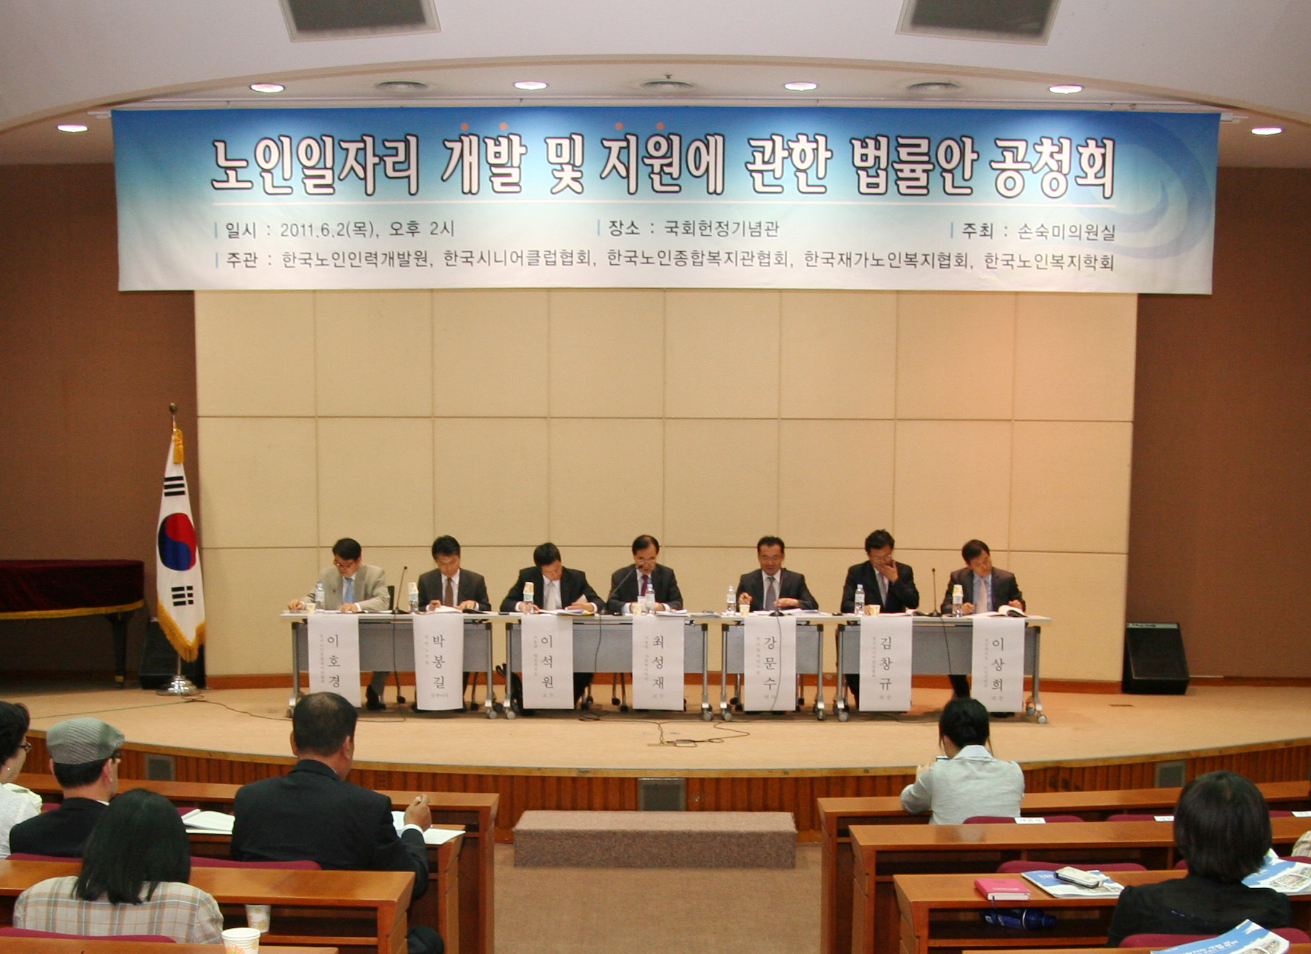 ‘노인일자리 개발 및 지원에 관한 법률안’ 공청회 개최